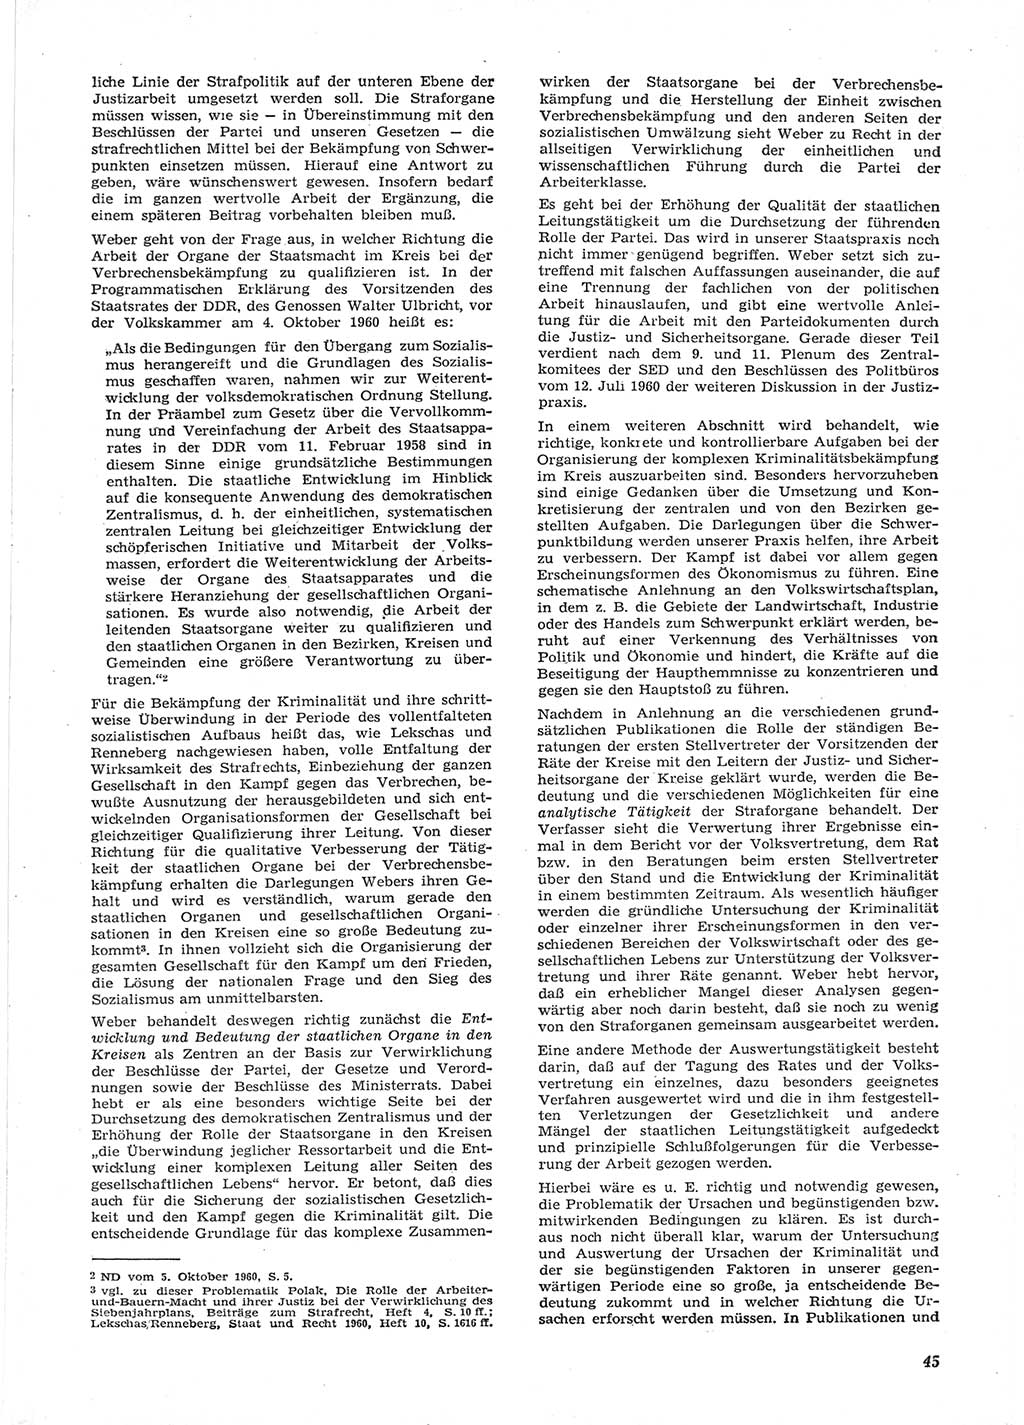 Neue Justiz (NJ), Zeitschrift für Recht und Rechtswissenschaft [Deutsche Demokratische Republik (DDR)], 15. Jahrgang 1961, Seite 45 (NJ DDR 1961, S. 45)